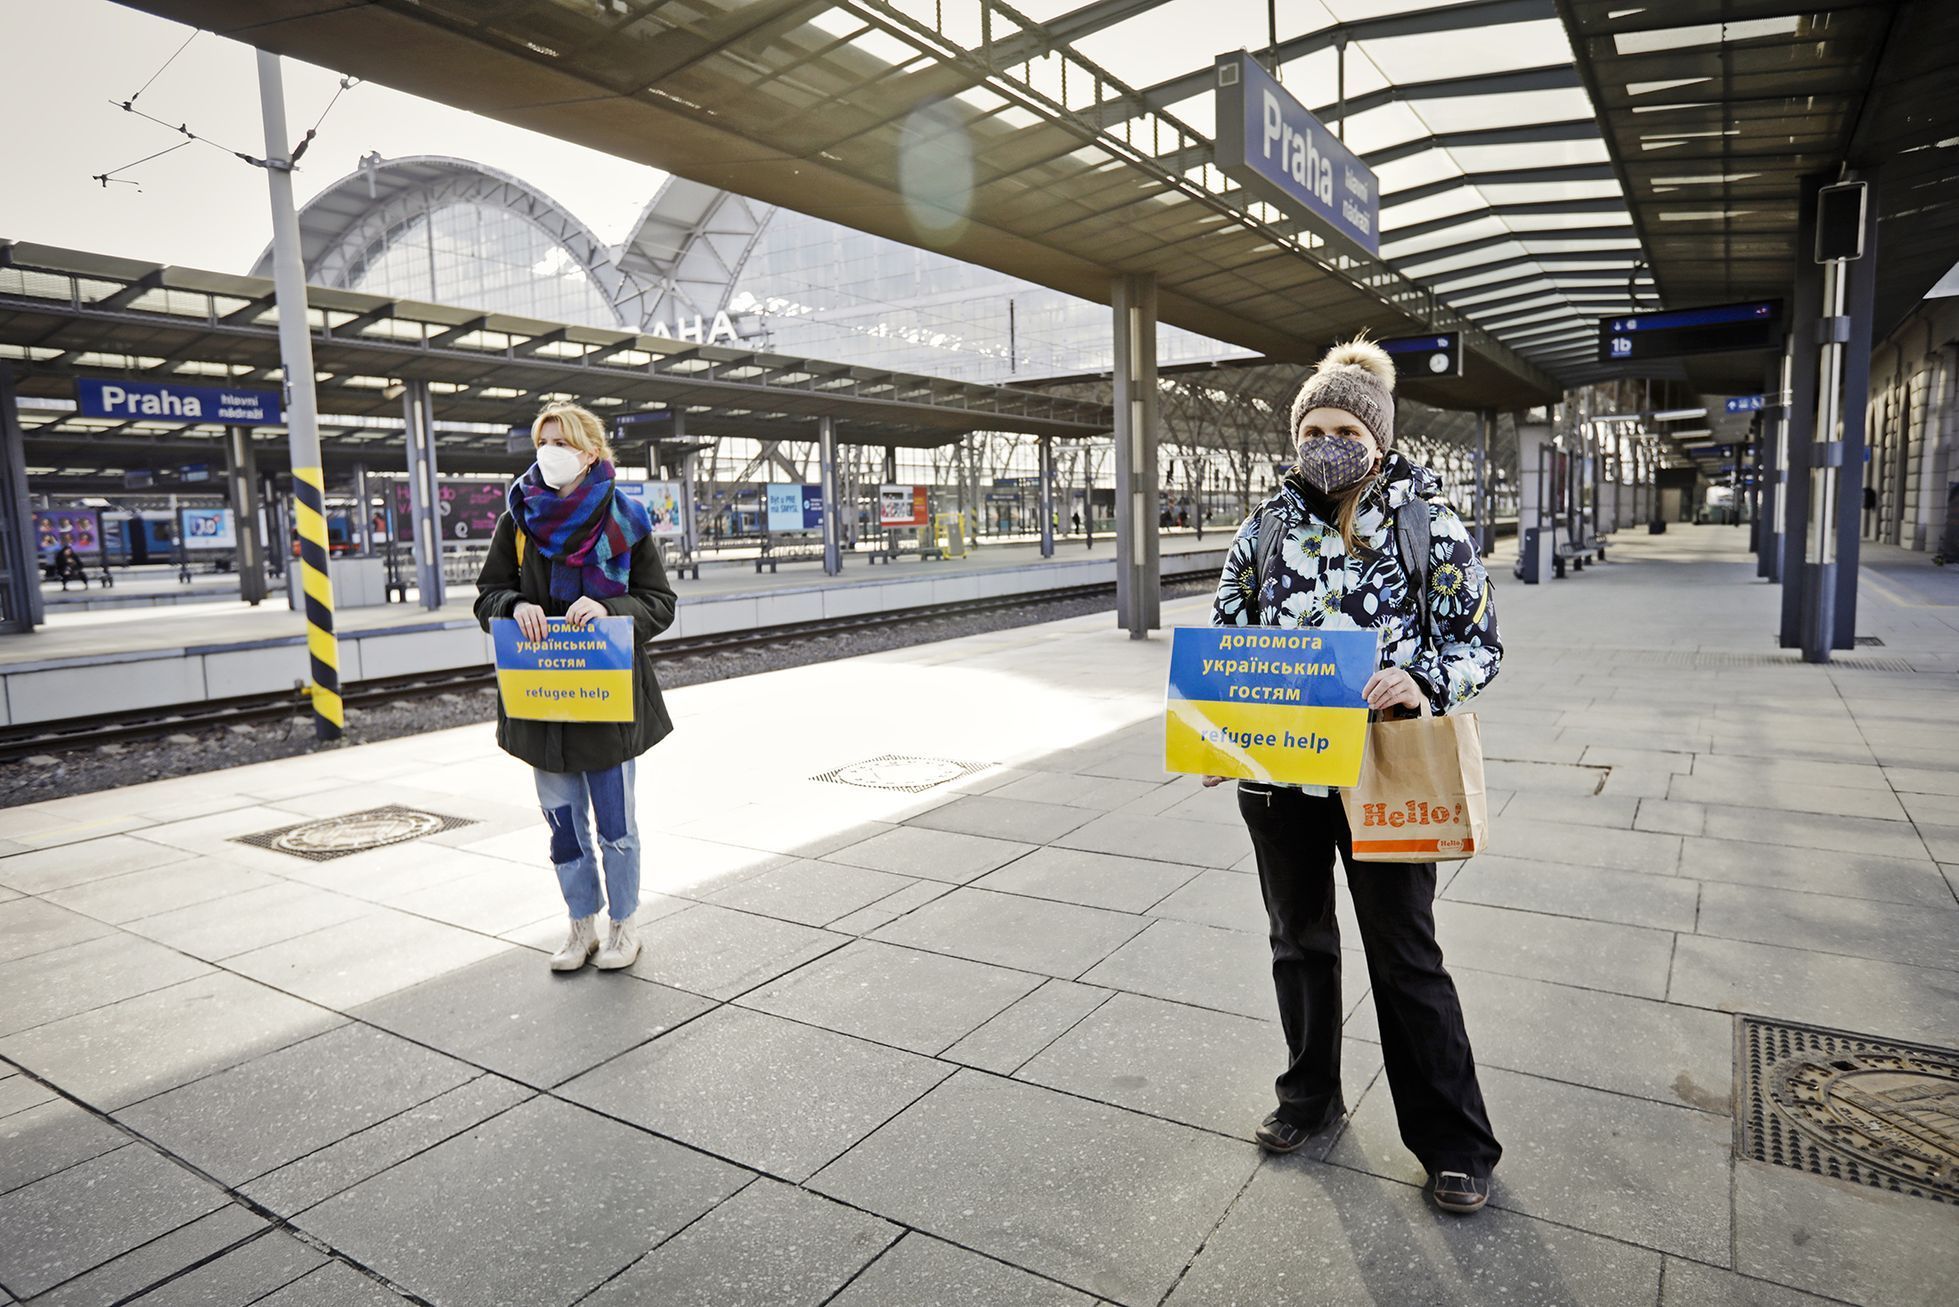 Foto / Hlavní nádraží v Praze / Ukrajina / asistenční centrum, info stánek, uprchlíci, dobrovolníci, Ukrajina, Iniciativa Hlavák